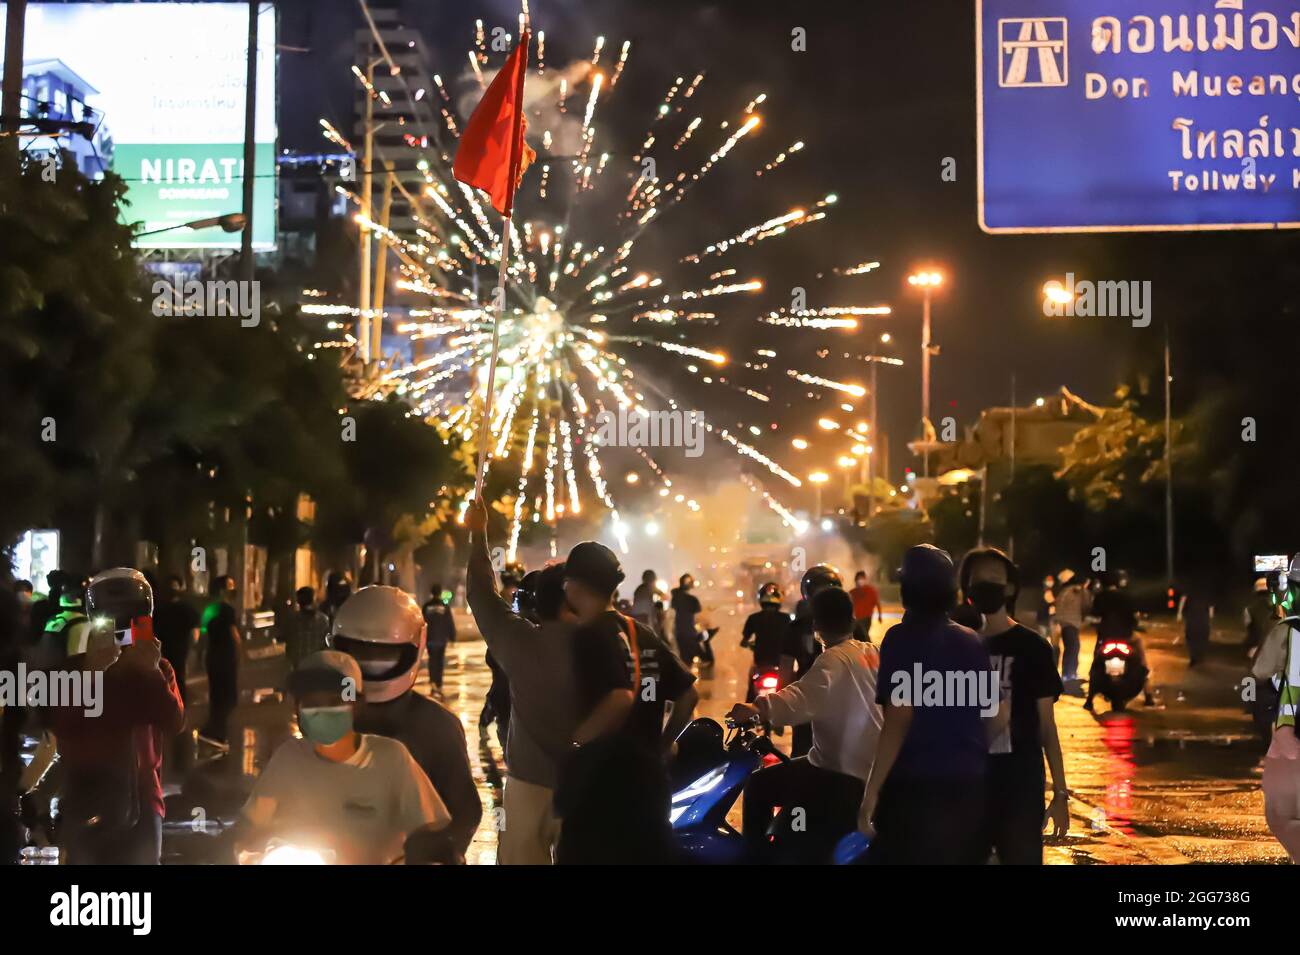 Bangkok, THAILANDIA - 22 agosto 2021: I manifestanti anti del governo sparano i fuochi d'artificio alla linea di polizia di Riot durante lo scontro a Vibhavadi Rangsit Road. Foto Stock